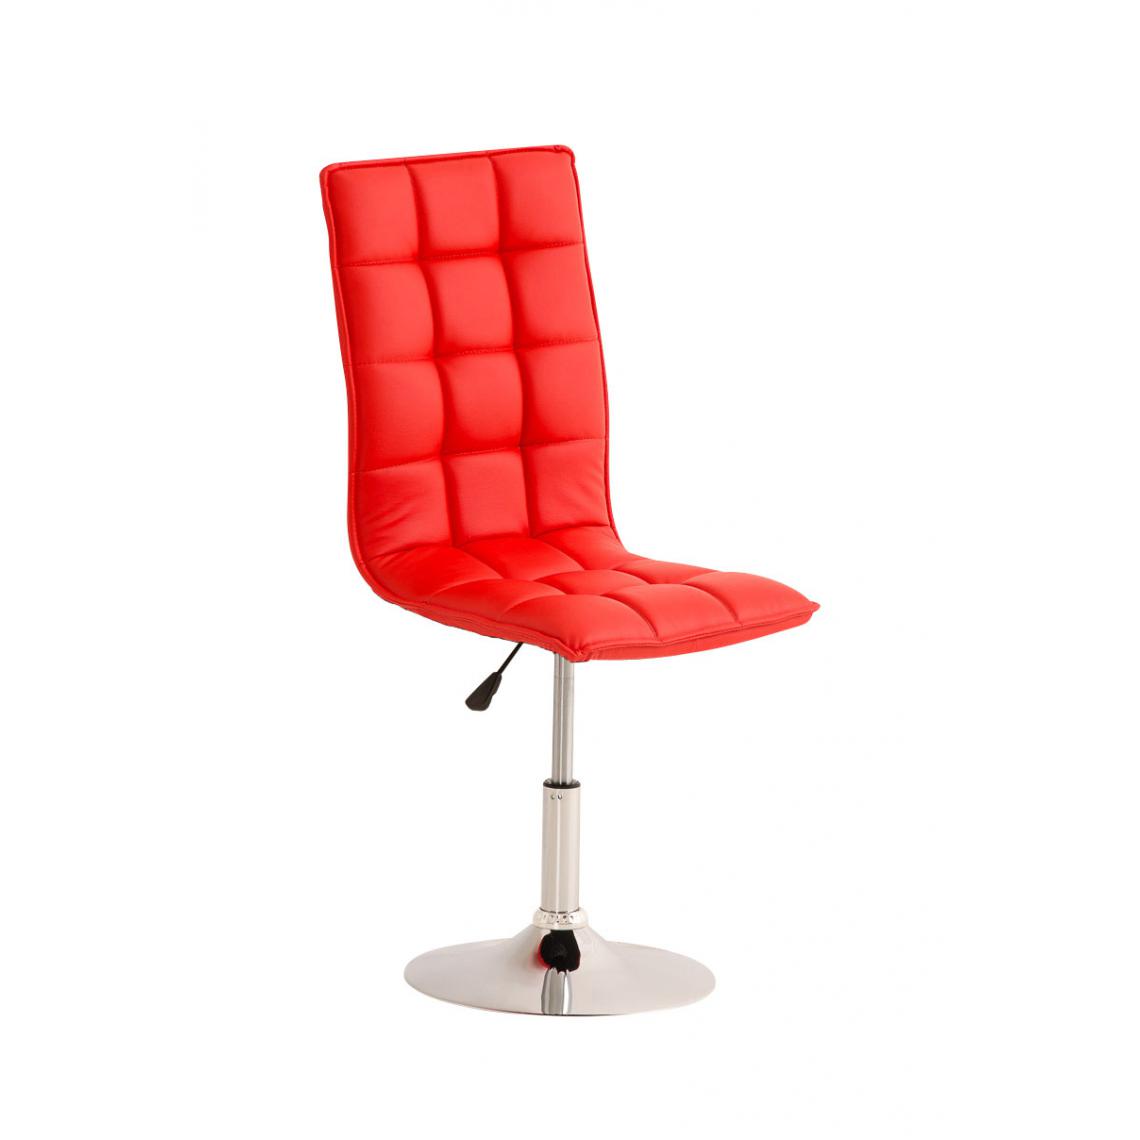 Icaverne - Splendide Chaise de salle à manger categorie Riga couleur rouge - Chaises